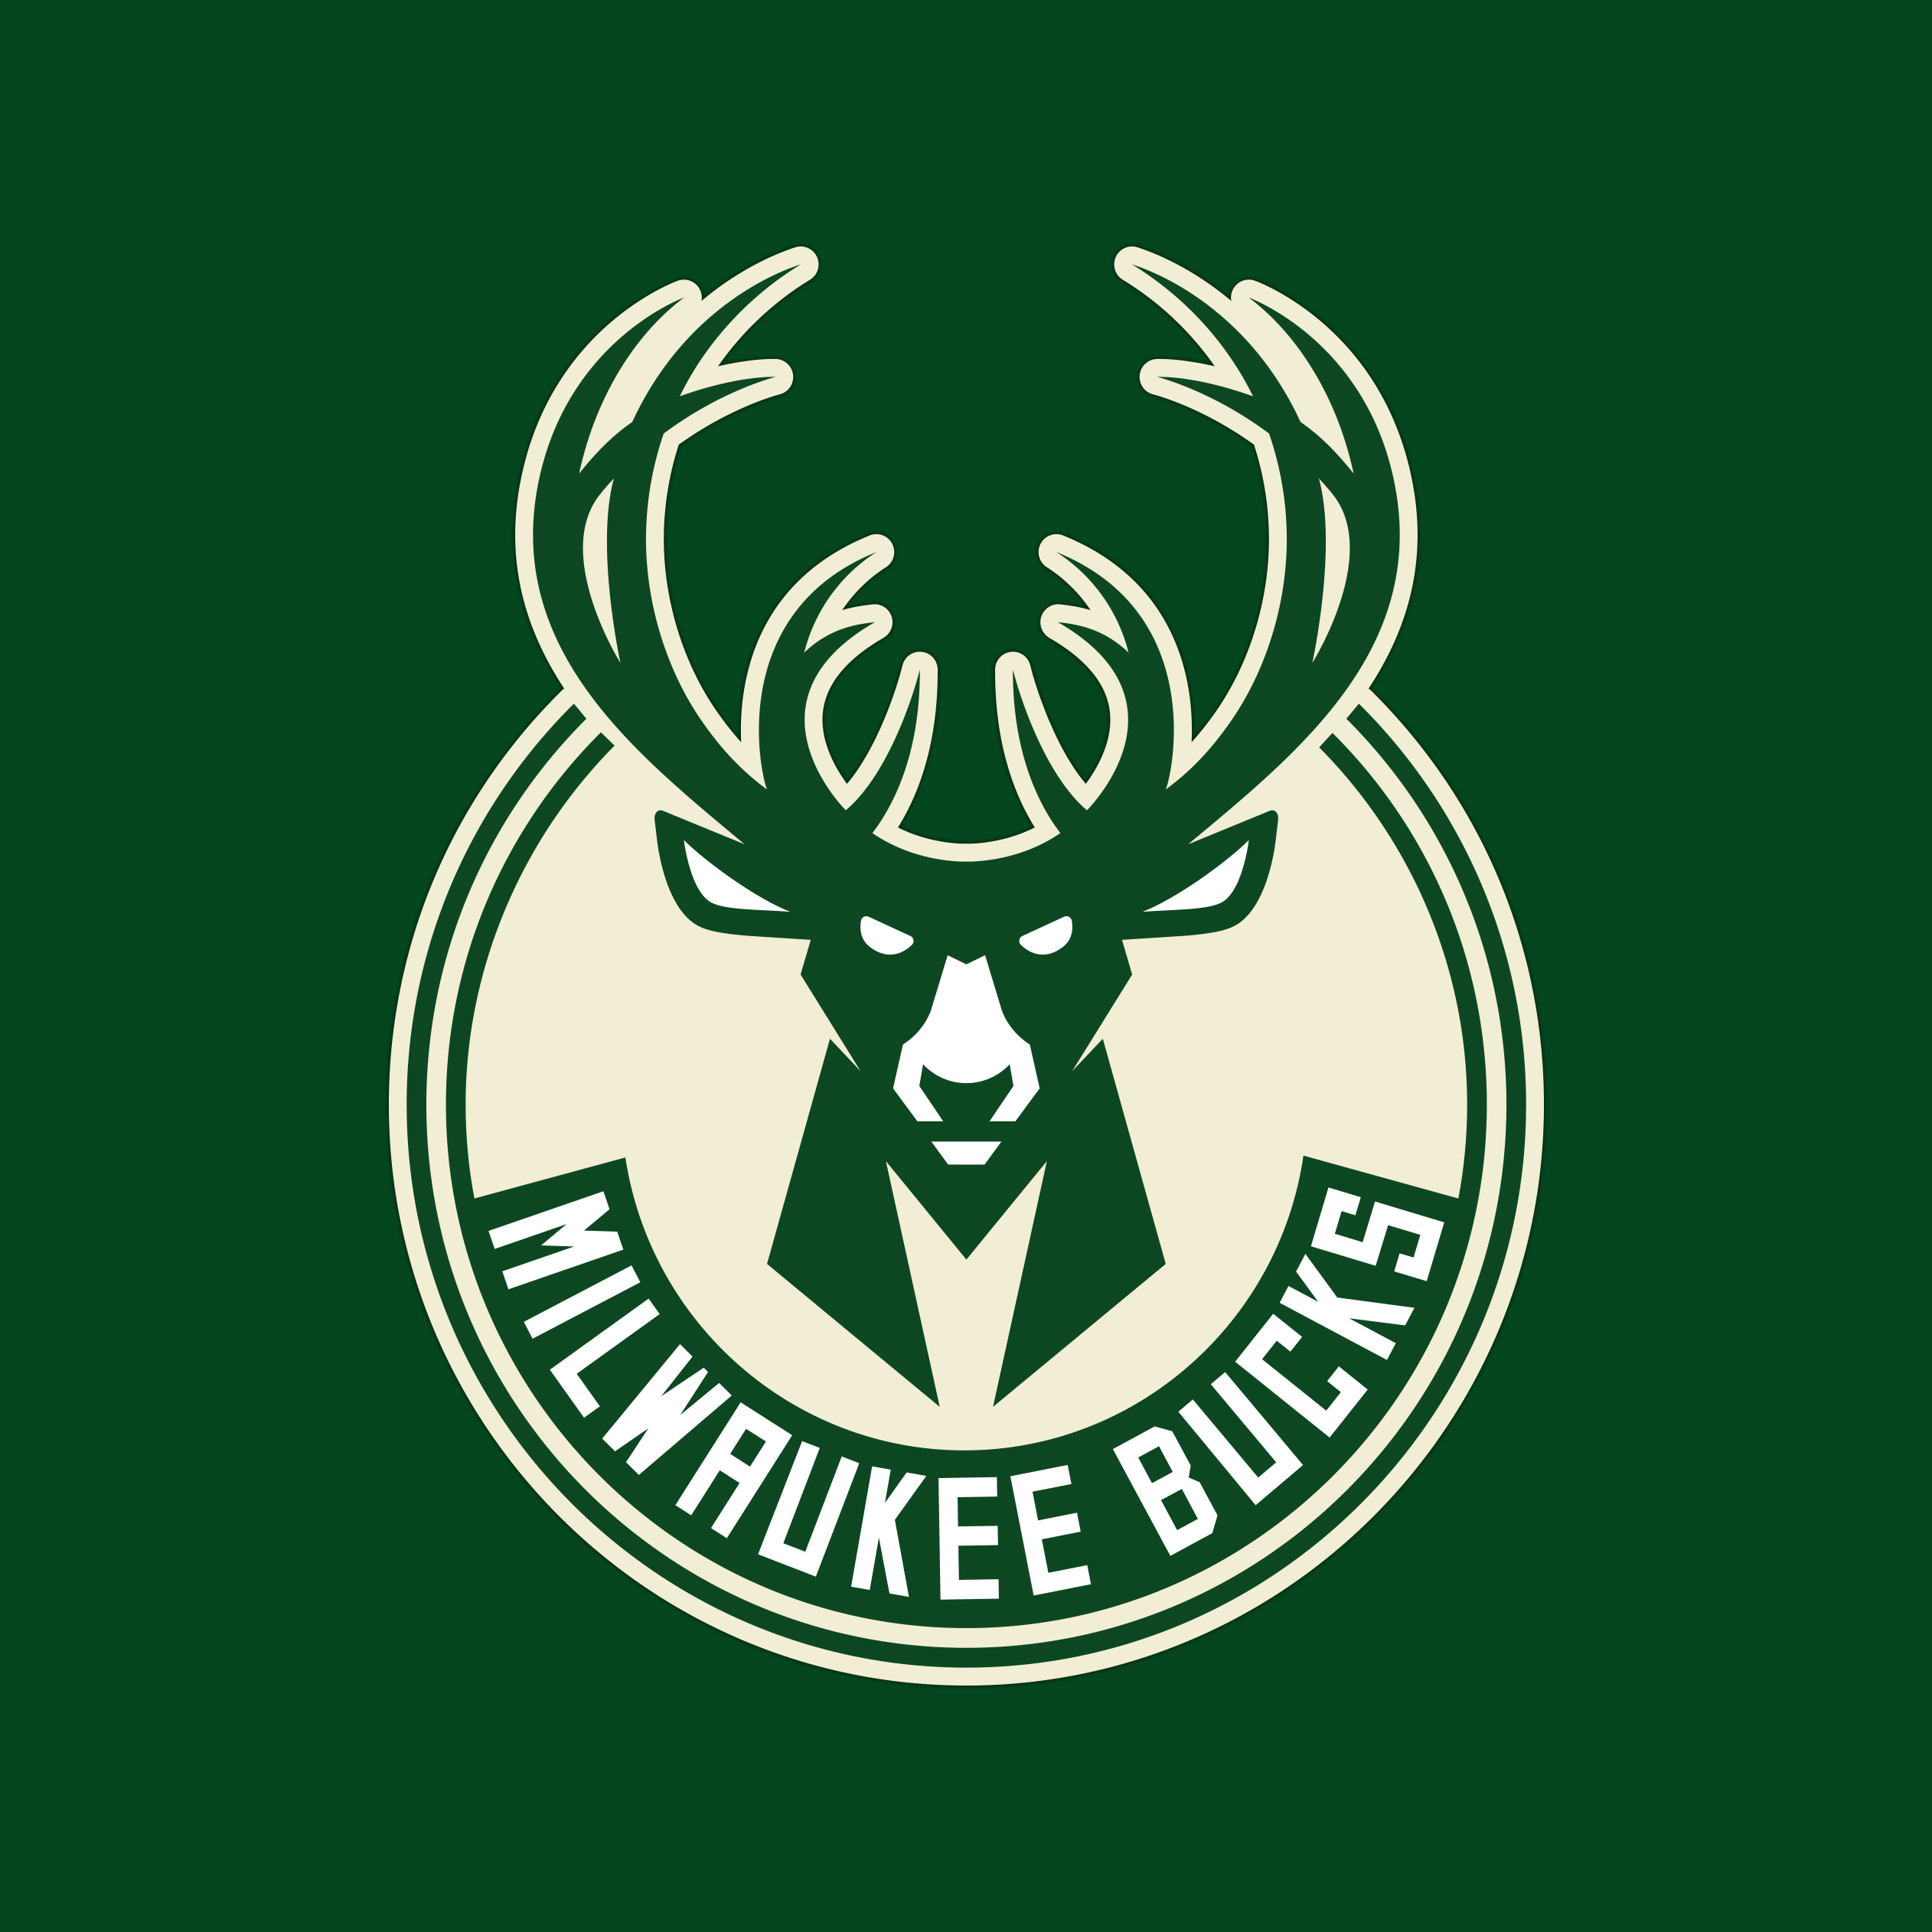 Bucks Background And Wallpaper Milwaukee